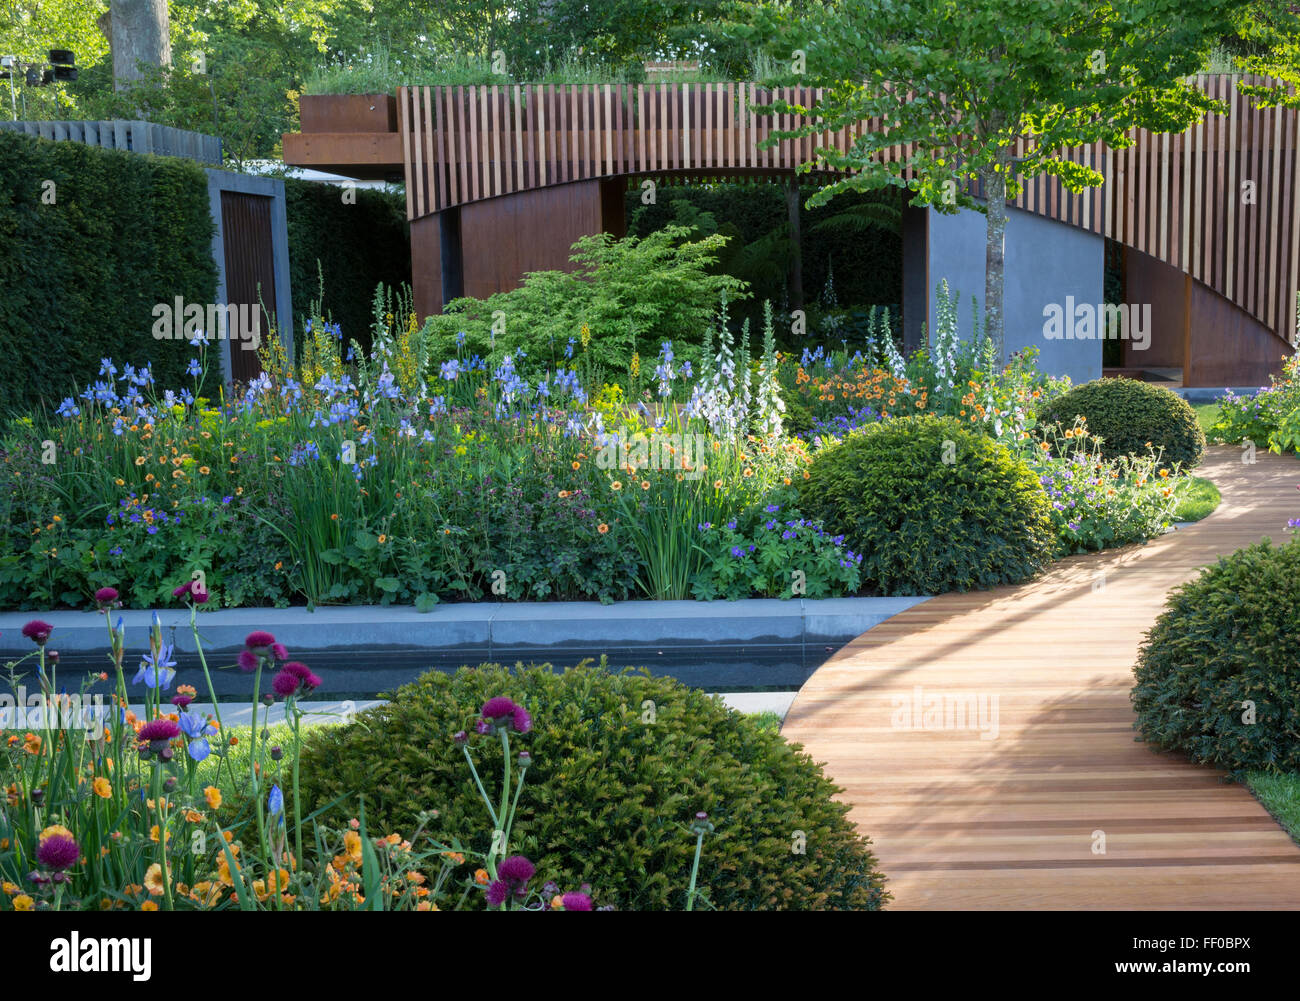 Ein Gartenbüro in einem städtischen Landgarten mit Holzpfaden, Kugeln und Blüten, die an die Blumen Grenzen, grenzt an Großbritannien Stockfoto